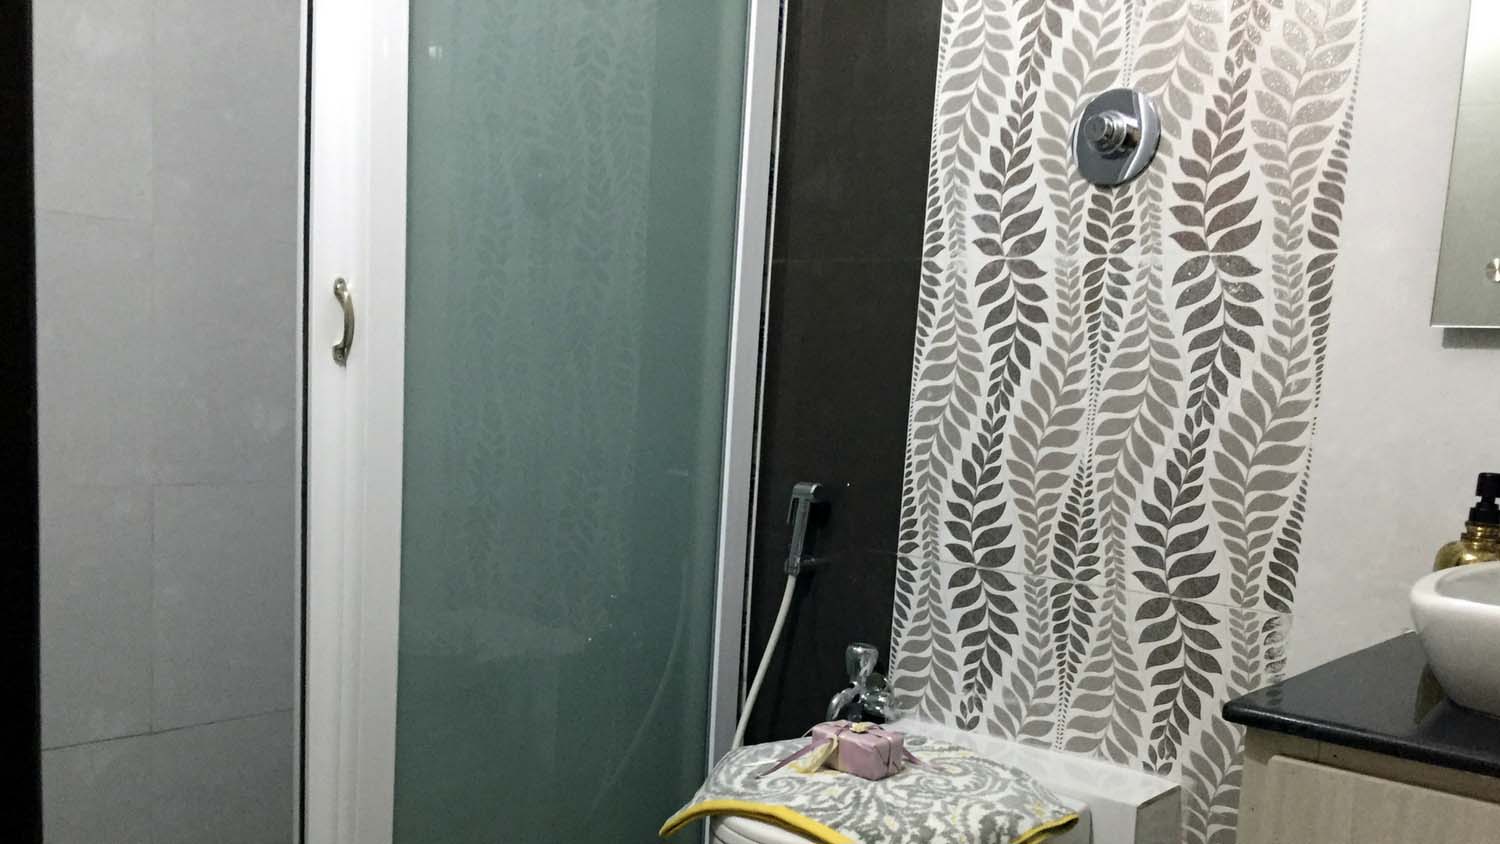 Bathroom Wet & Dry separating glass door